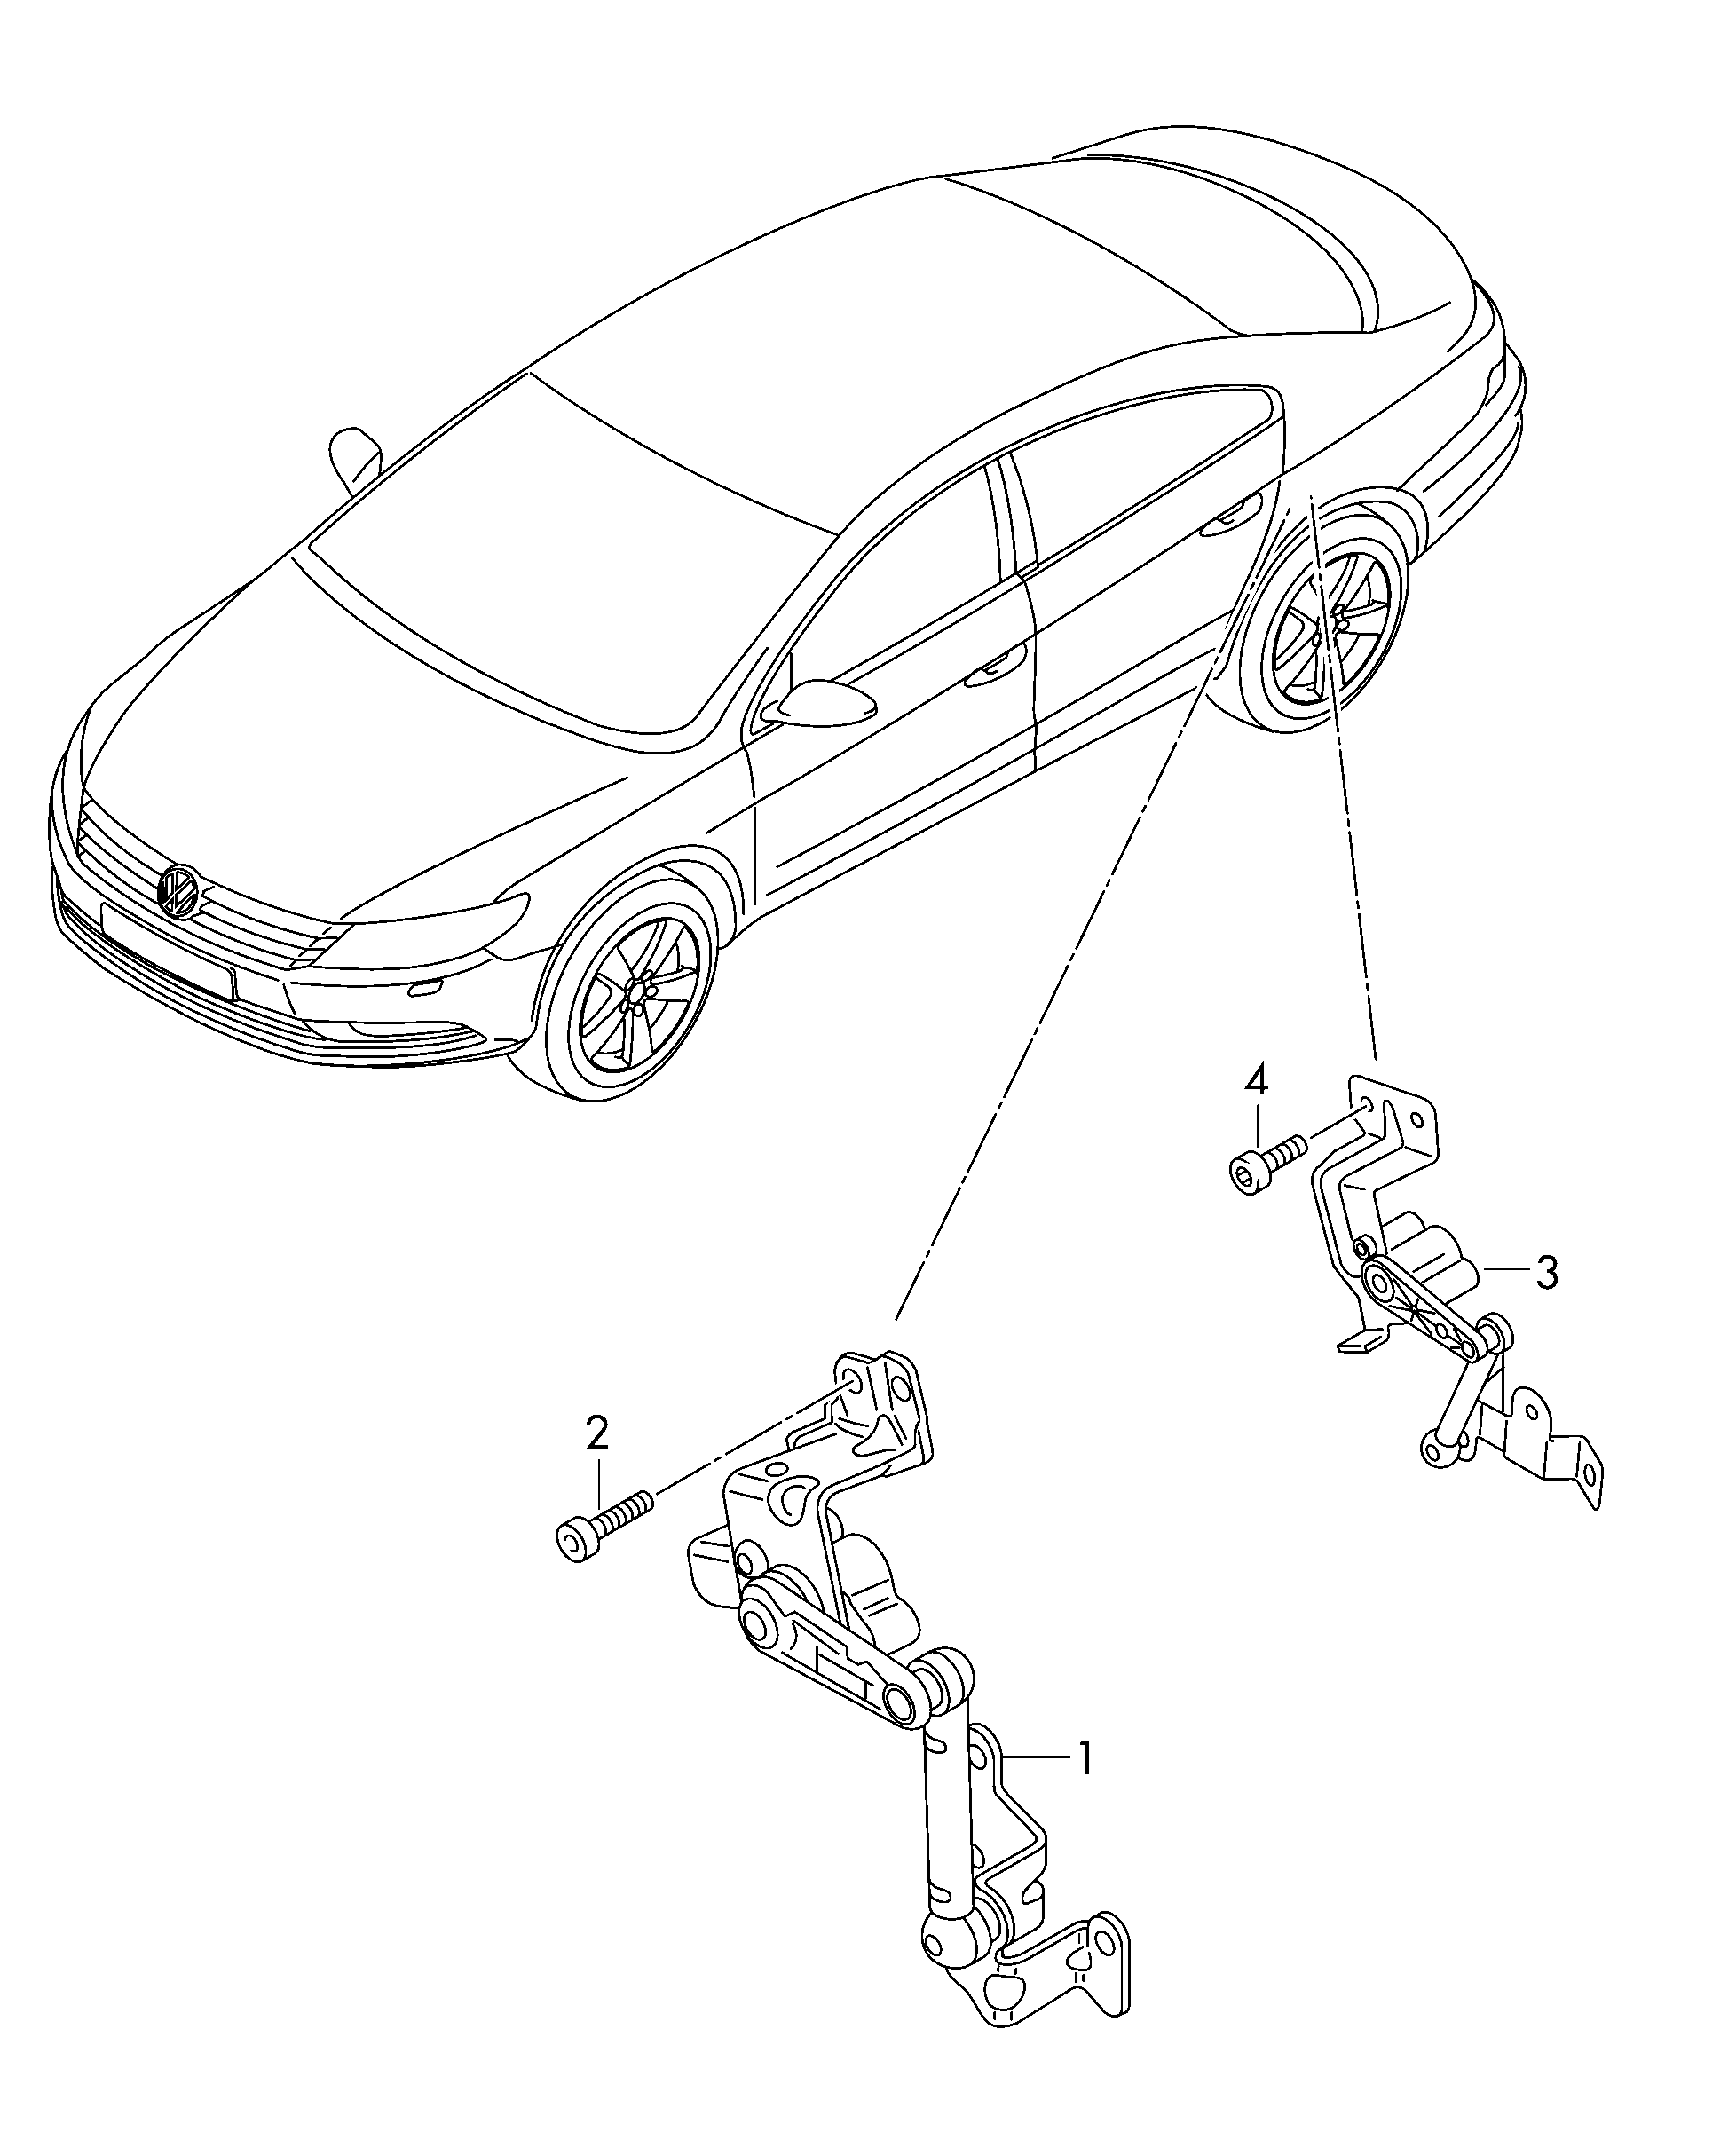 Niveausensorfür Fahrzeuge mit elek-<br>tronisch geregelter Dämpfung  - CC - cc